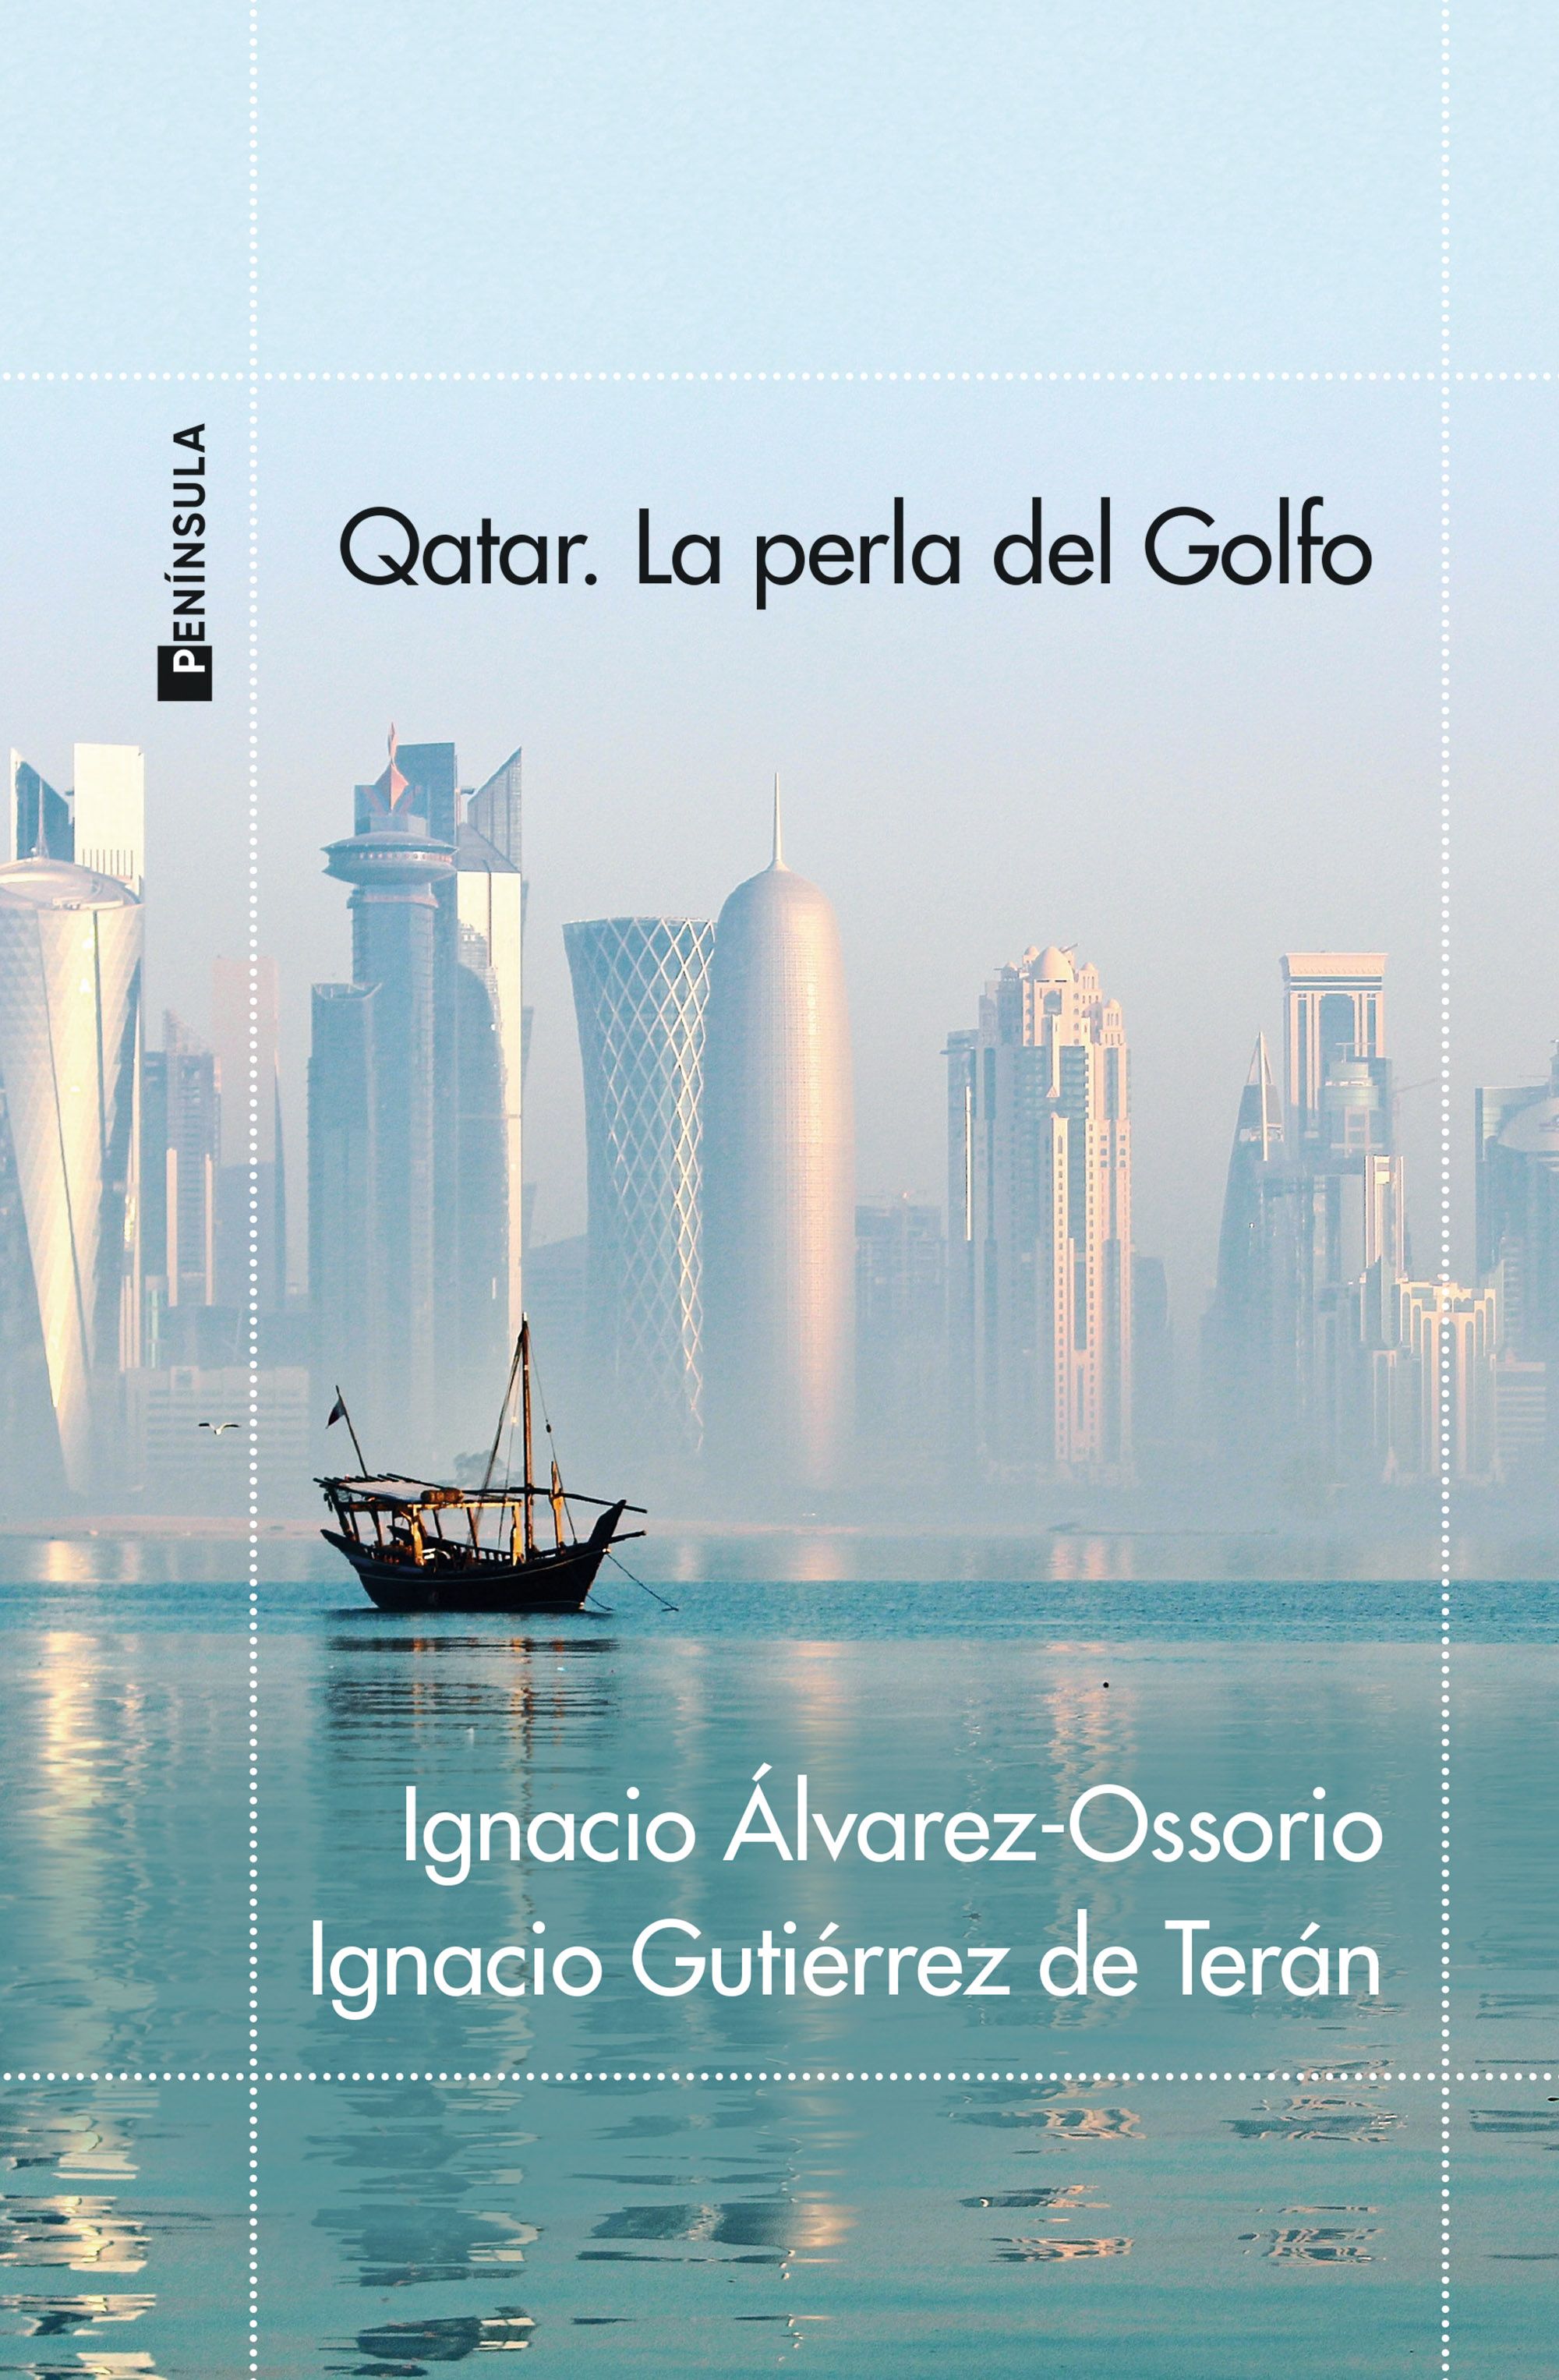 Portada del libro Qatar. La perla del Golfo30